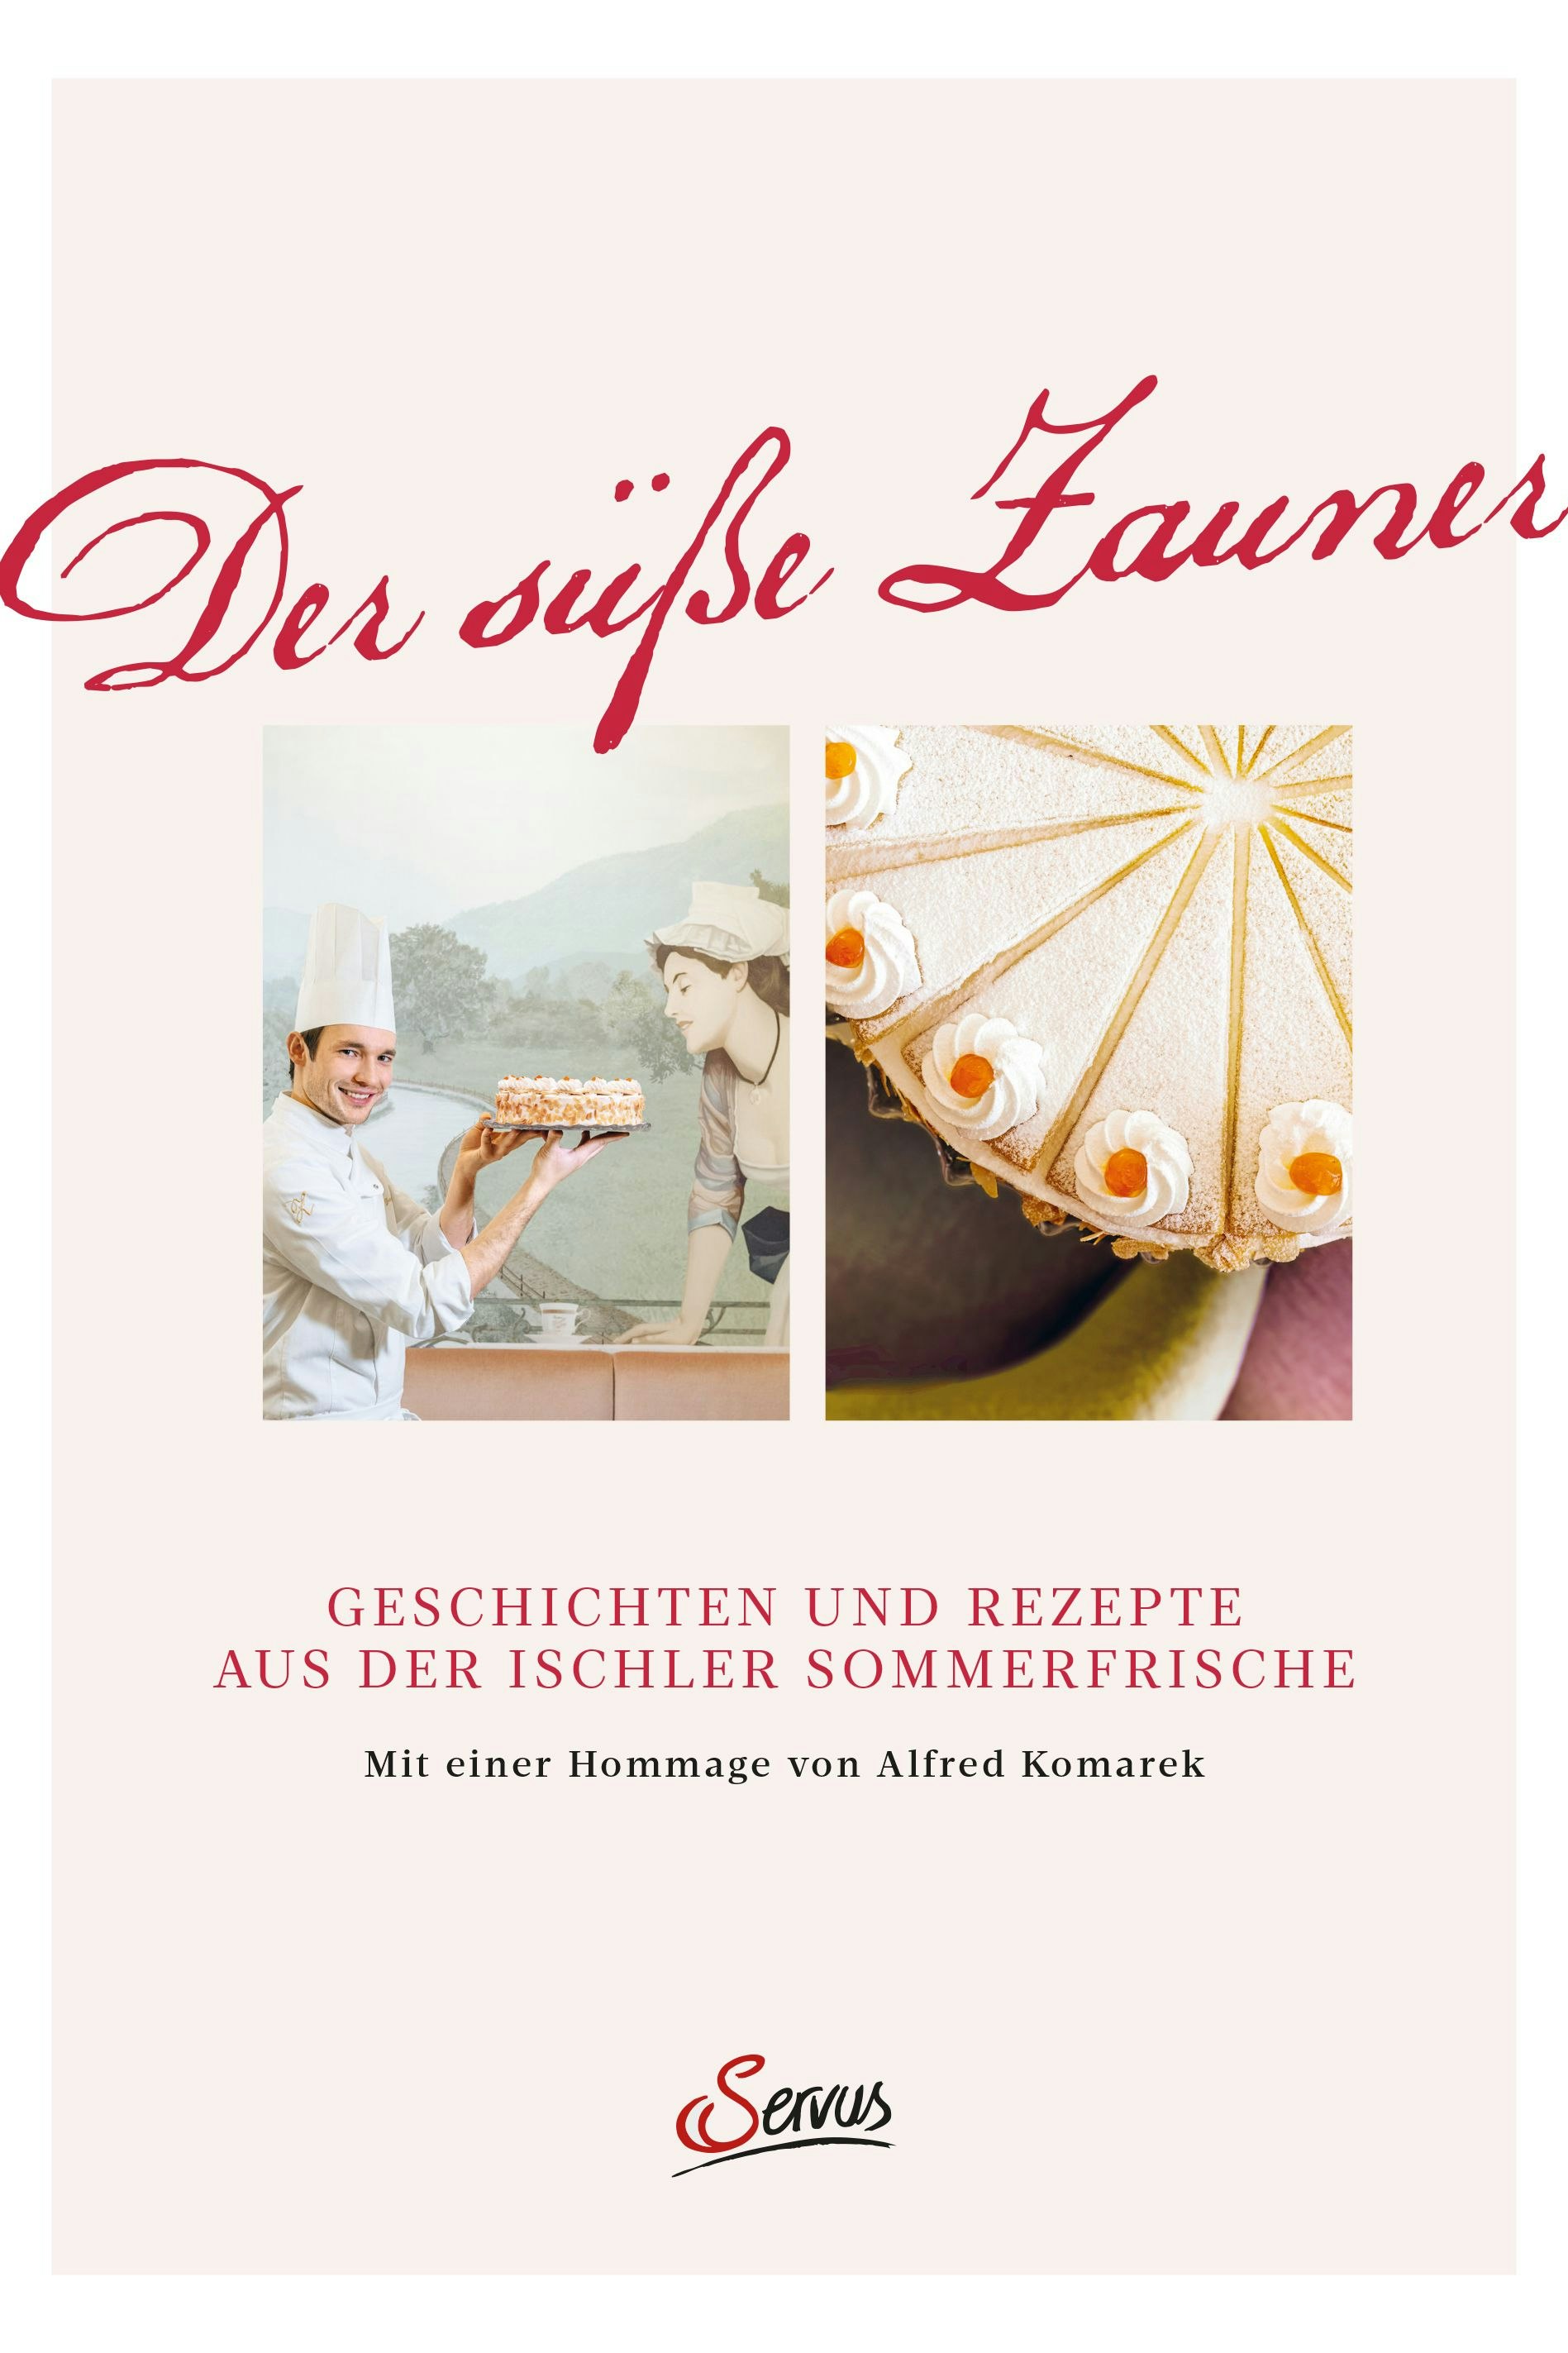 Das Kochbuch der legendären Süßspeisen-Familie aus Bad Ischl